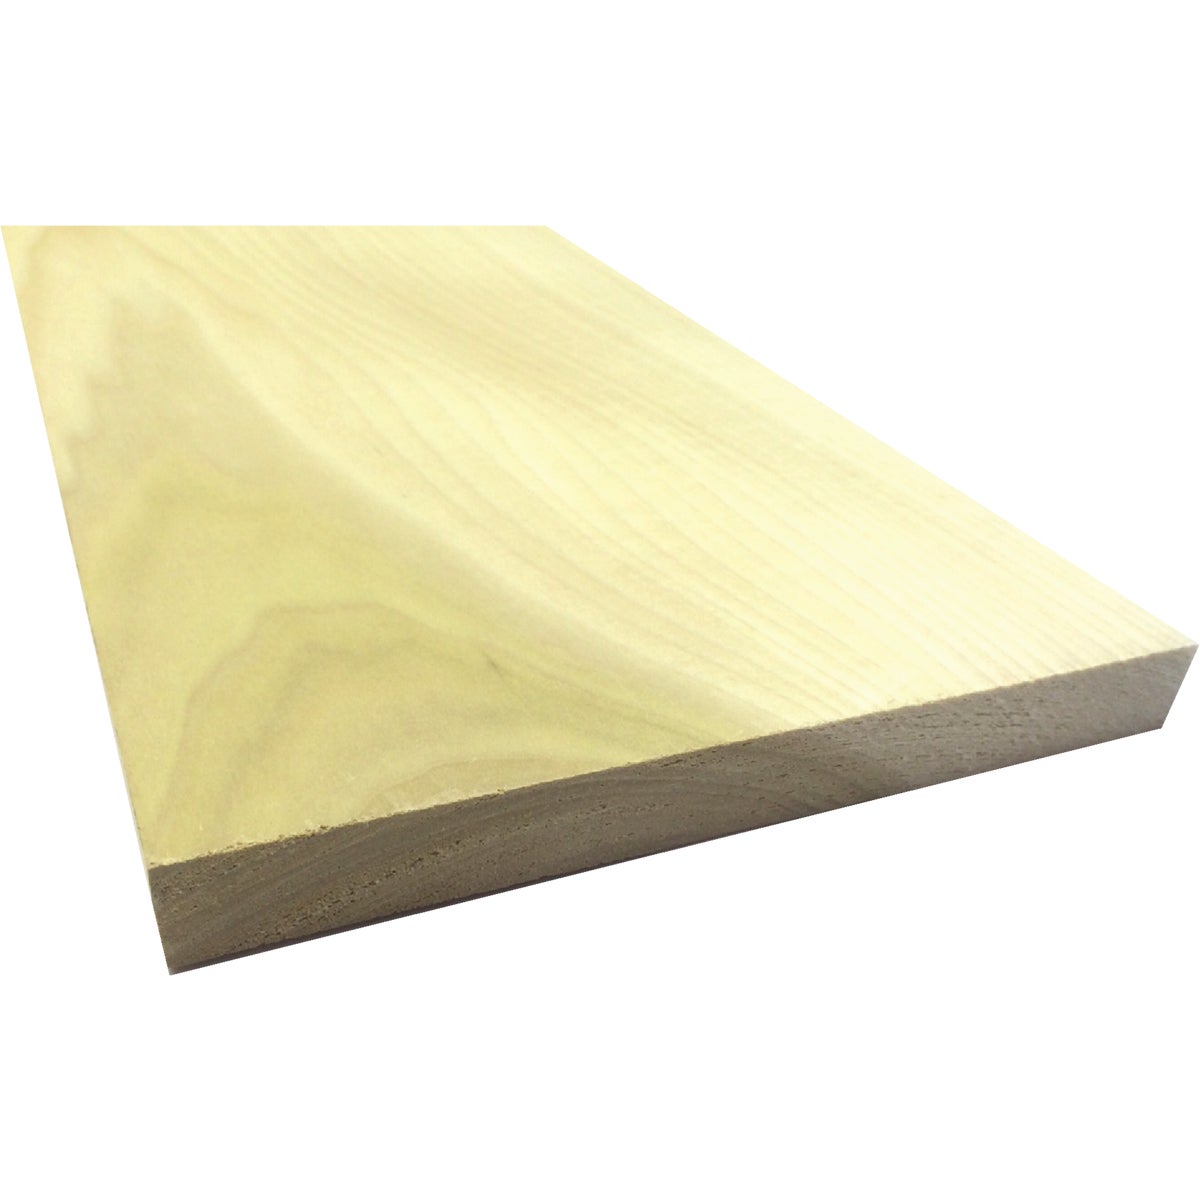 Waddell 1 In. x 8 In. x 4 Ft. Poplar Wood Board